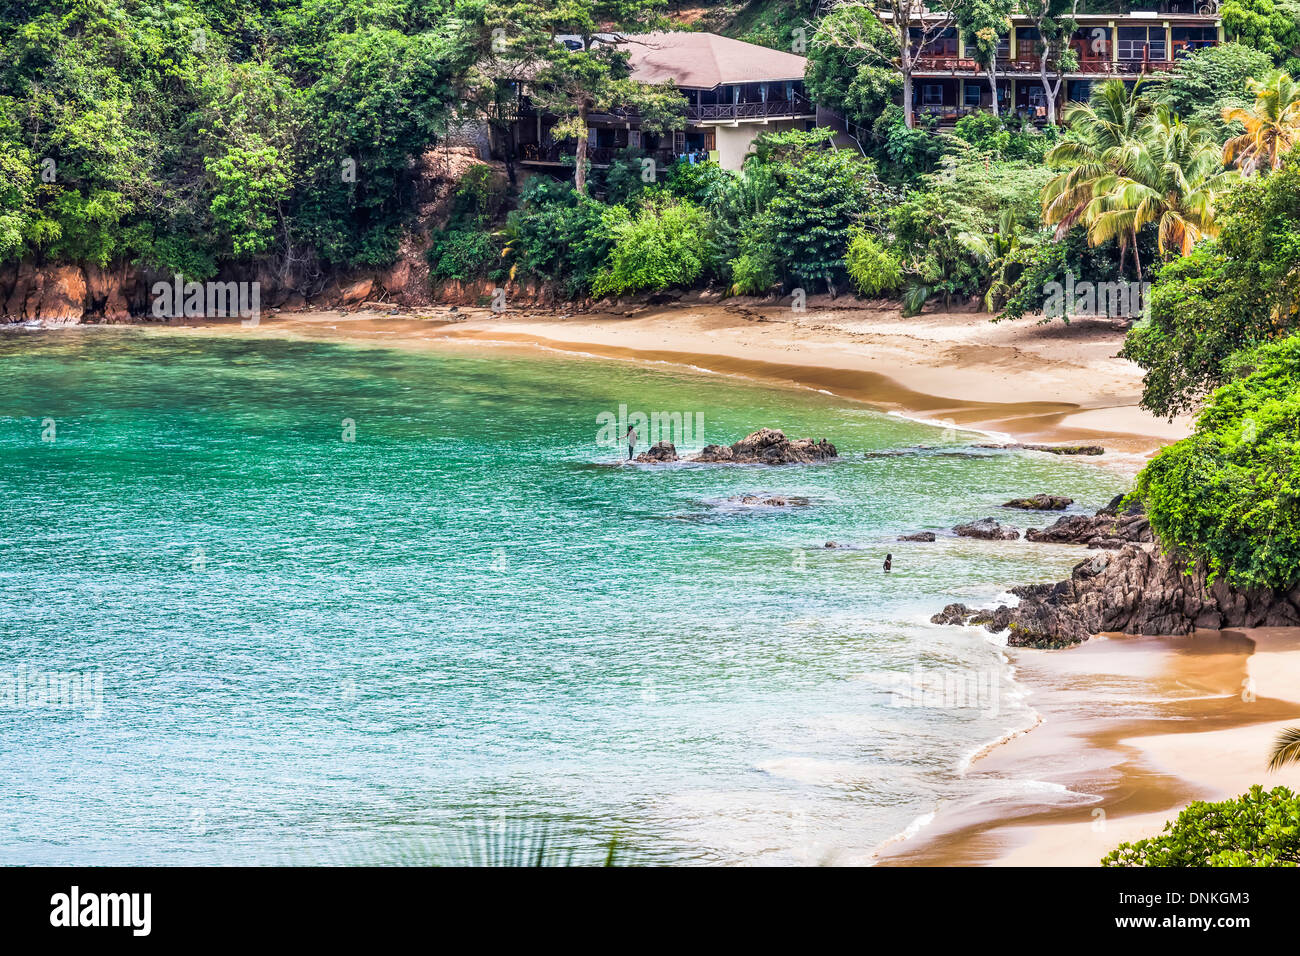 Spiaggia, rocce e baia del villaggio caraibico dell'isola di Castara, Tobago, Repubblica di Trinidad e Tobago Indie occidentali Foto Stock